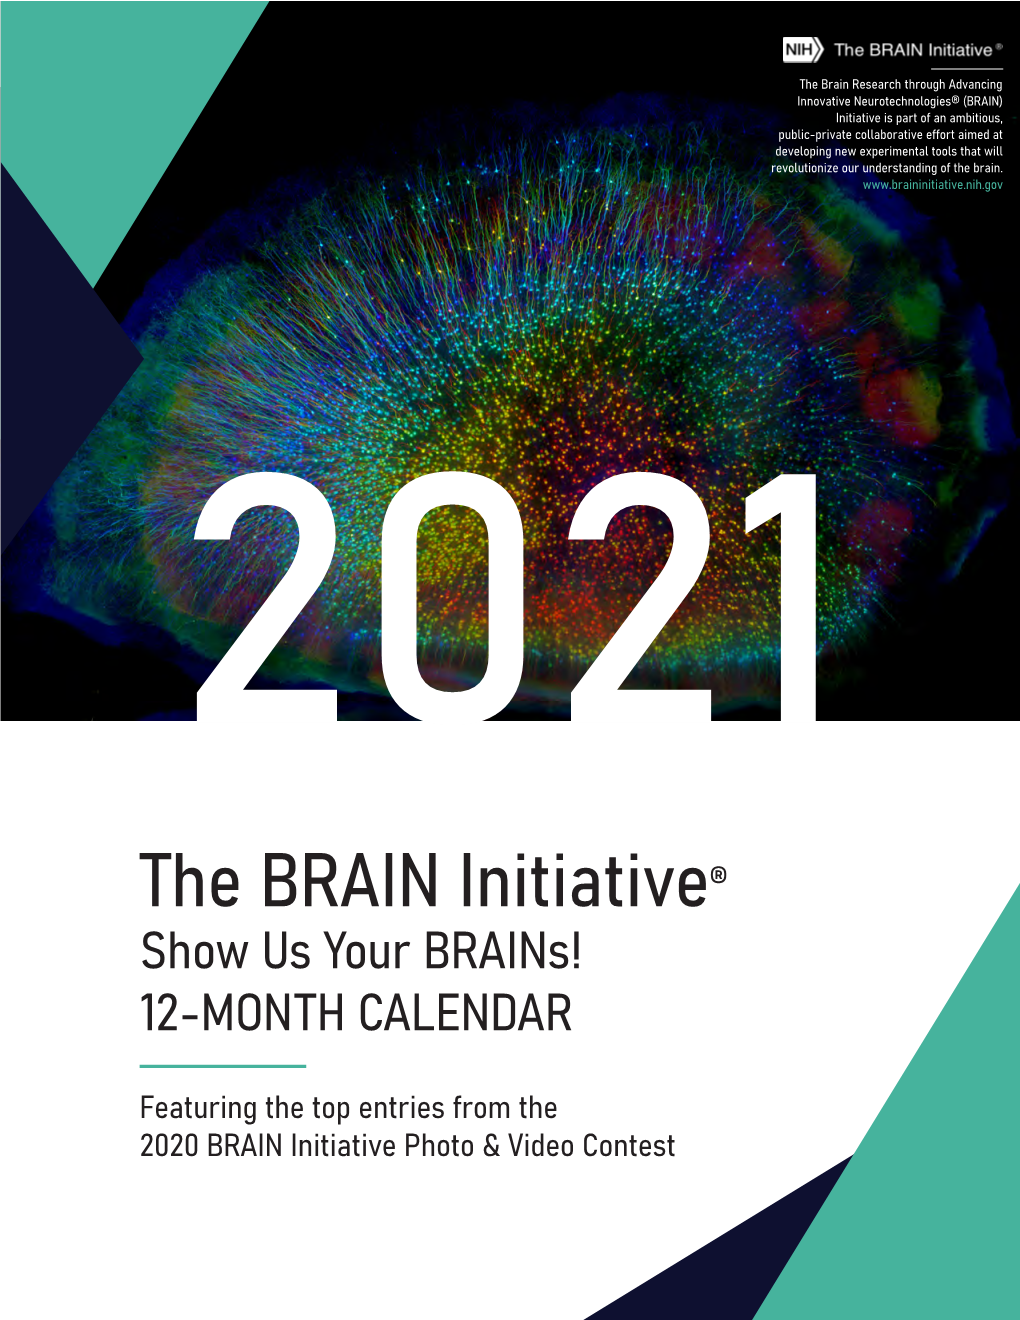 Download the 2021 BRAIN Initiative Calendar